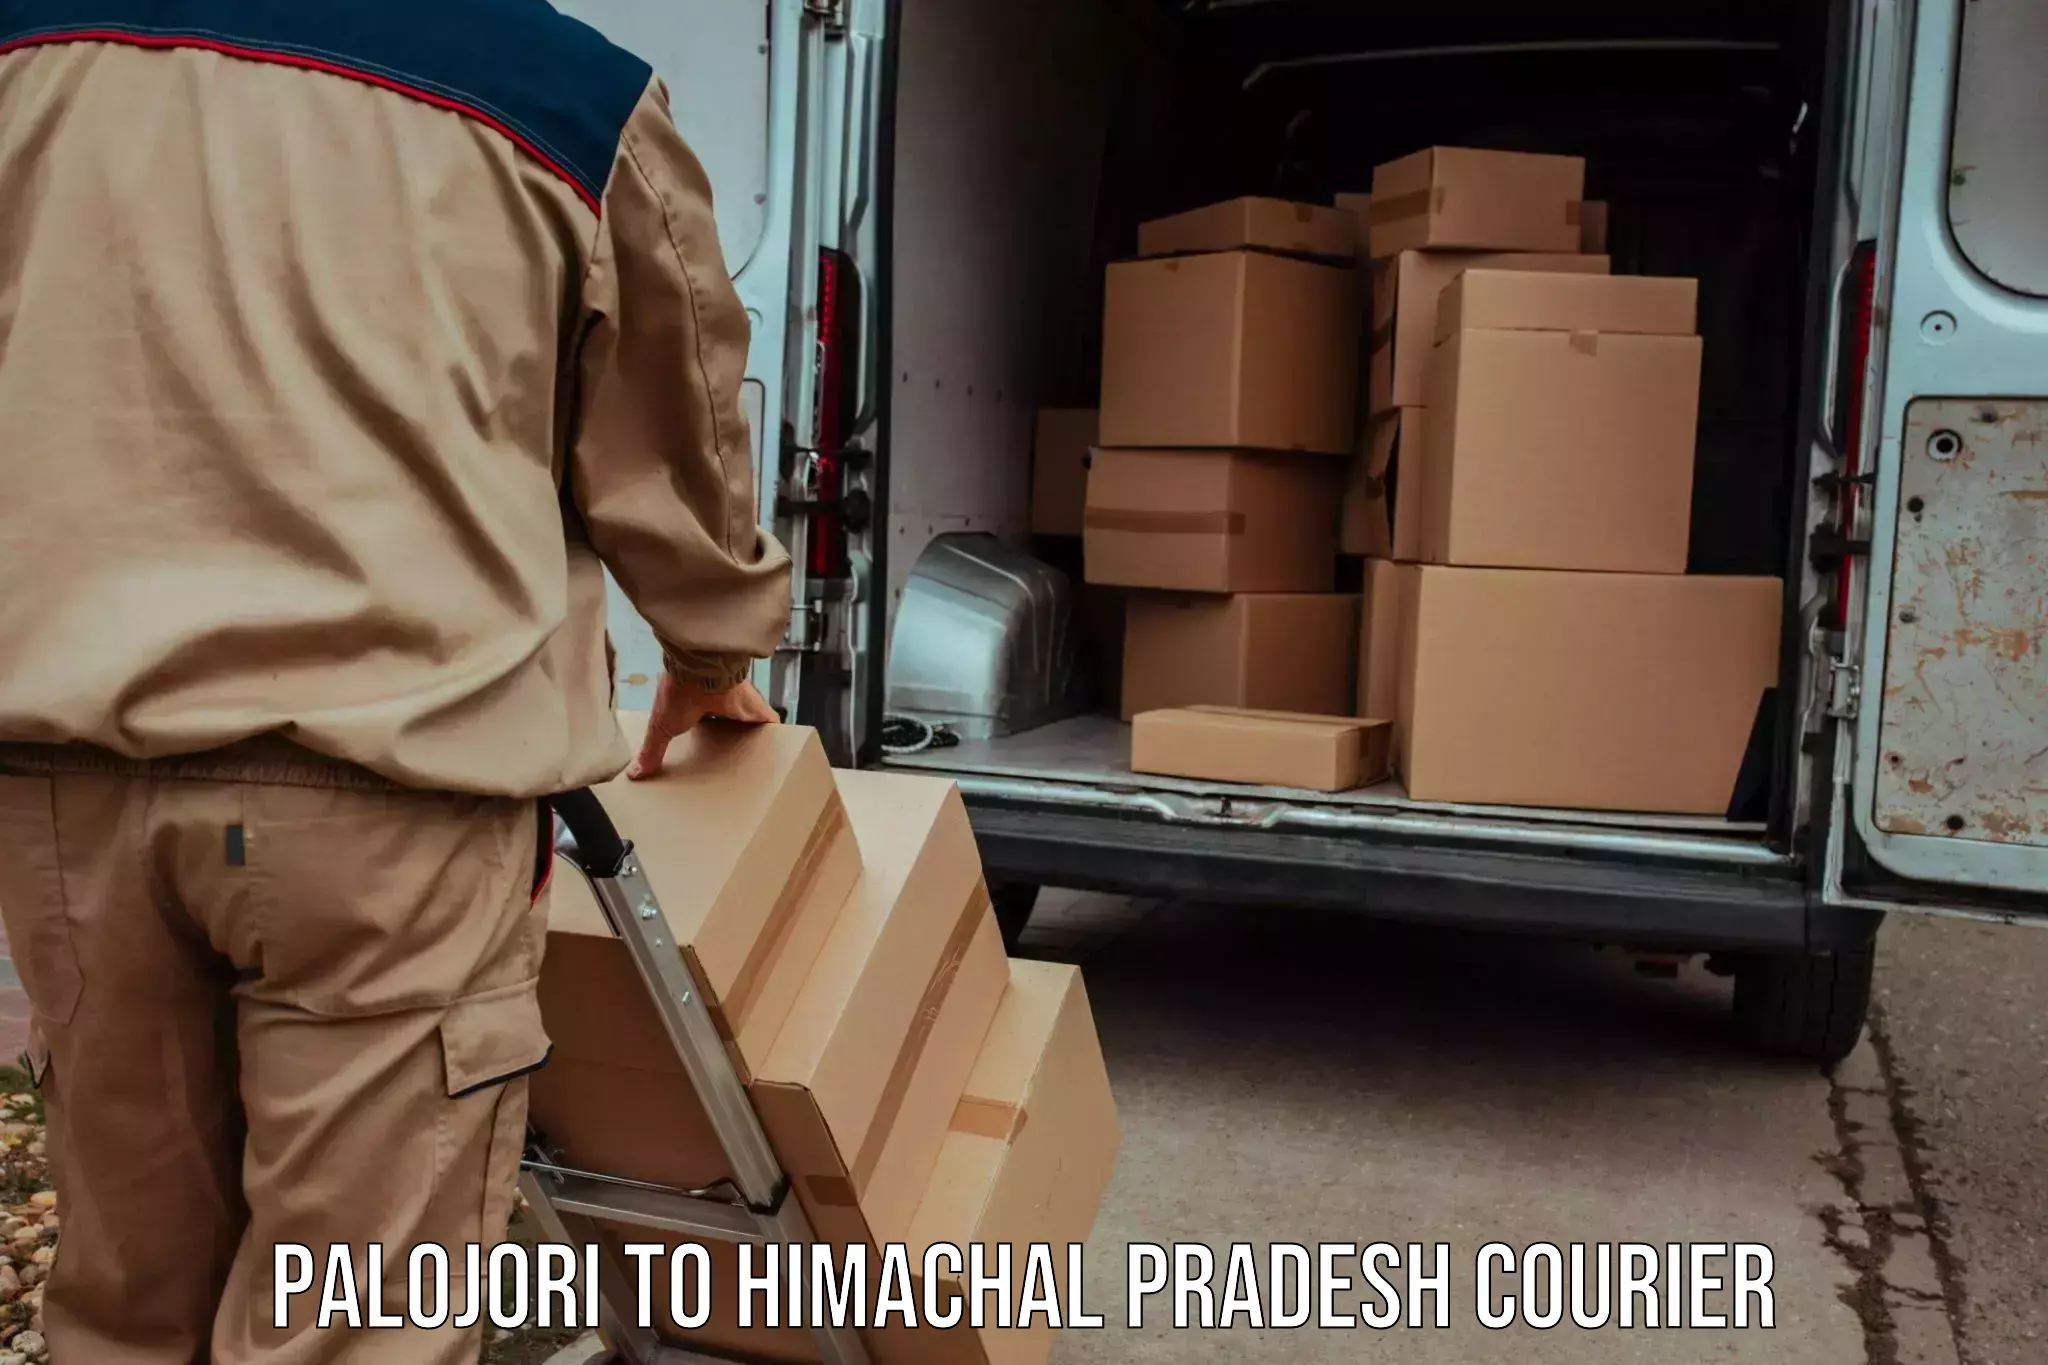 Multi-service courier options Palojori to Himachal Pradesh